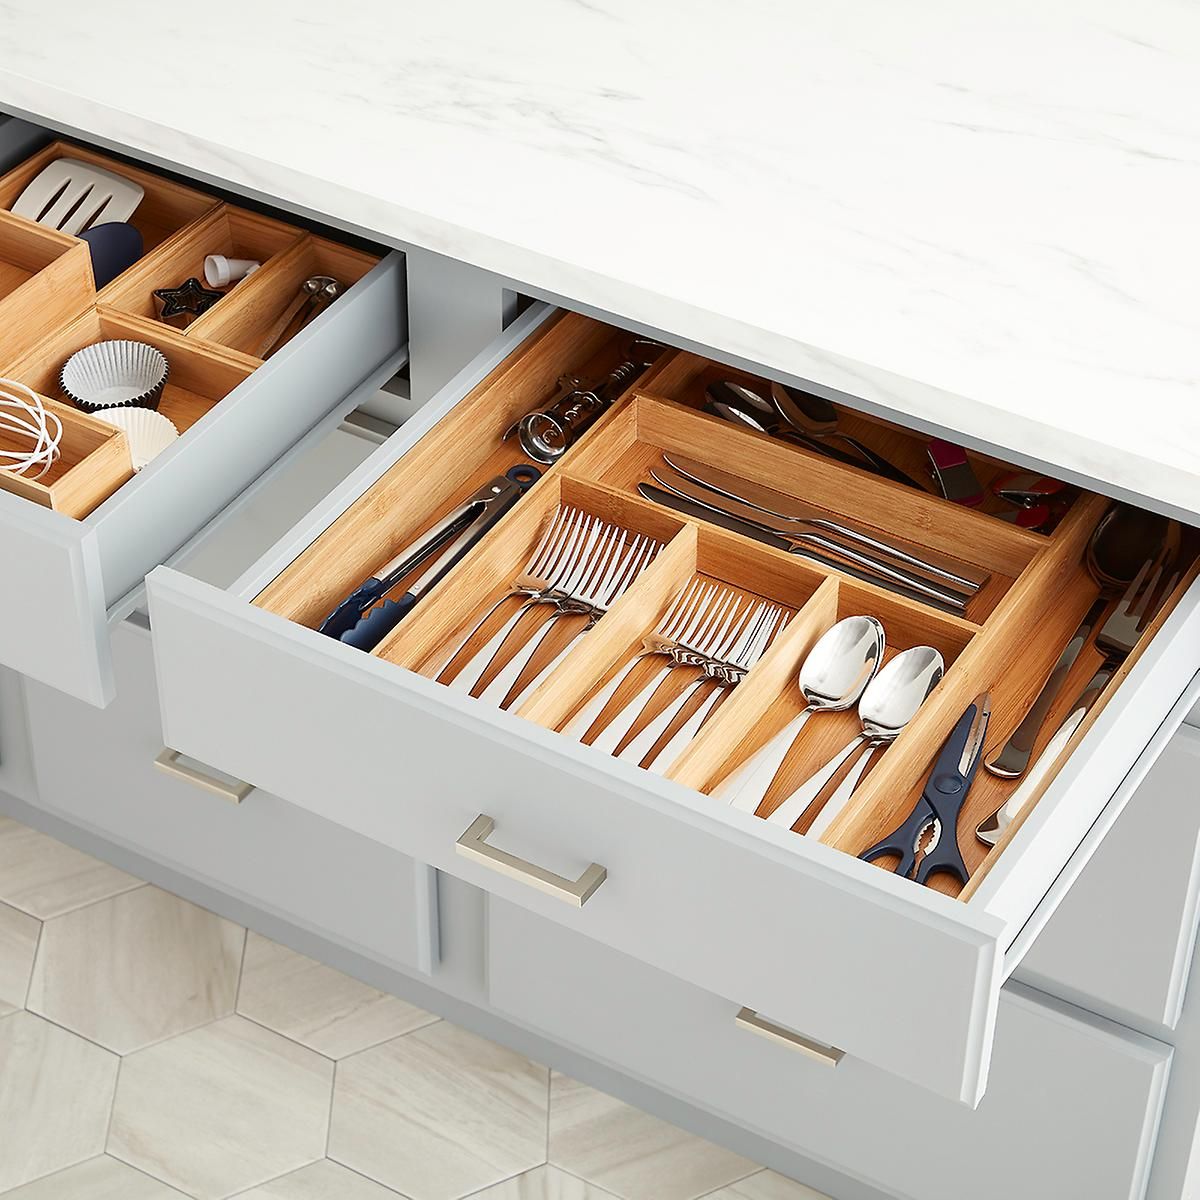 Kitchen drawer organizers for better kitchen work